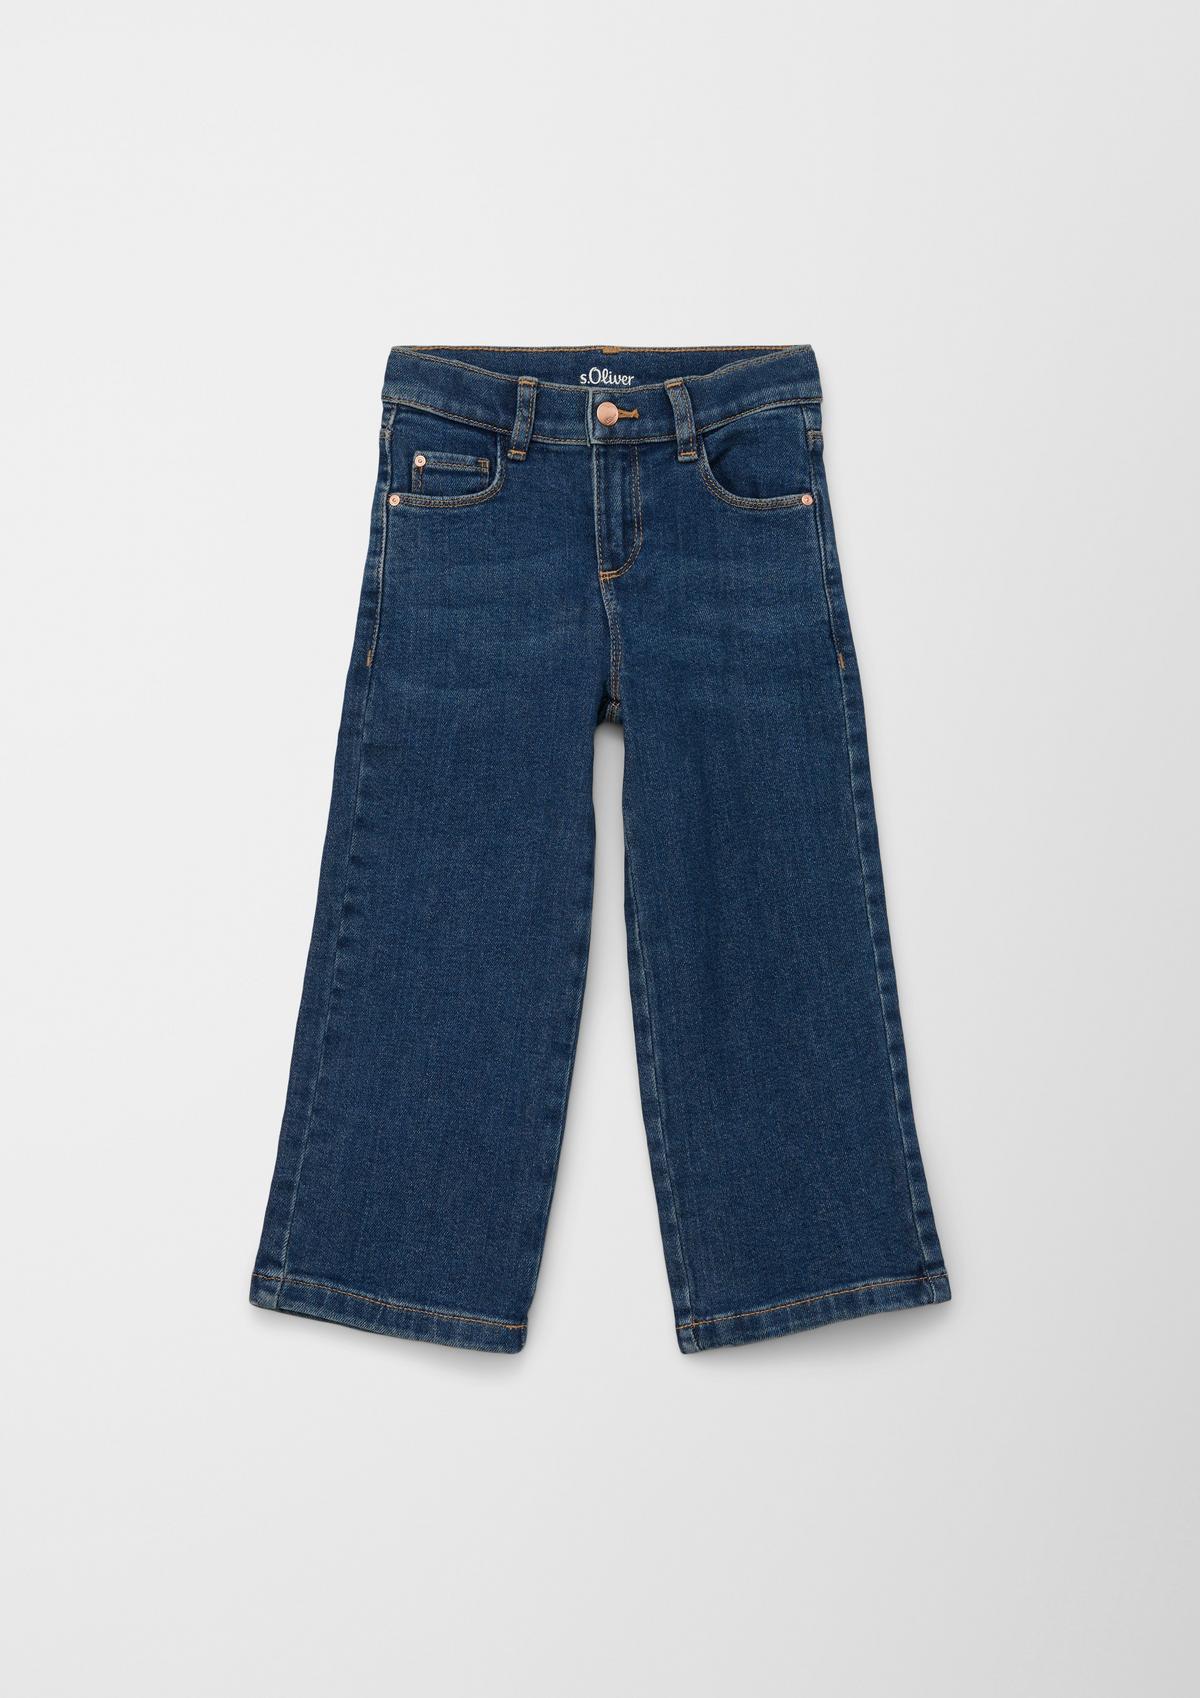 Jeans hlače / kroj Regular Fit/ Mid Rise / široke hlačnice / po širini nastavljive